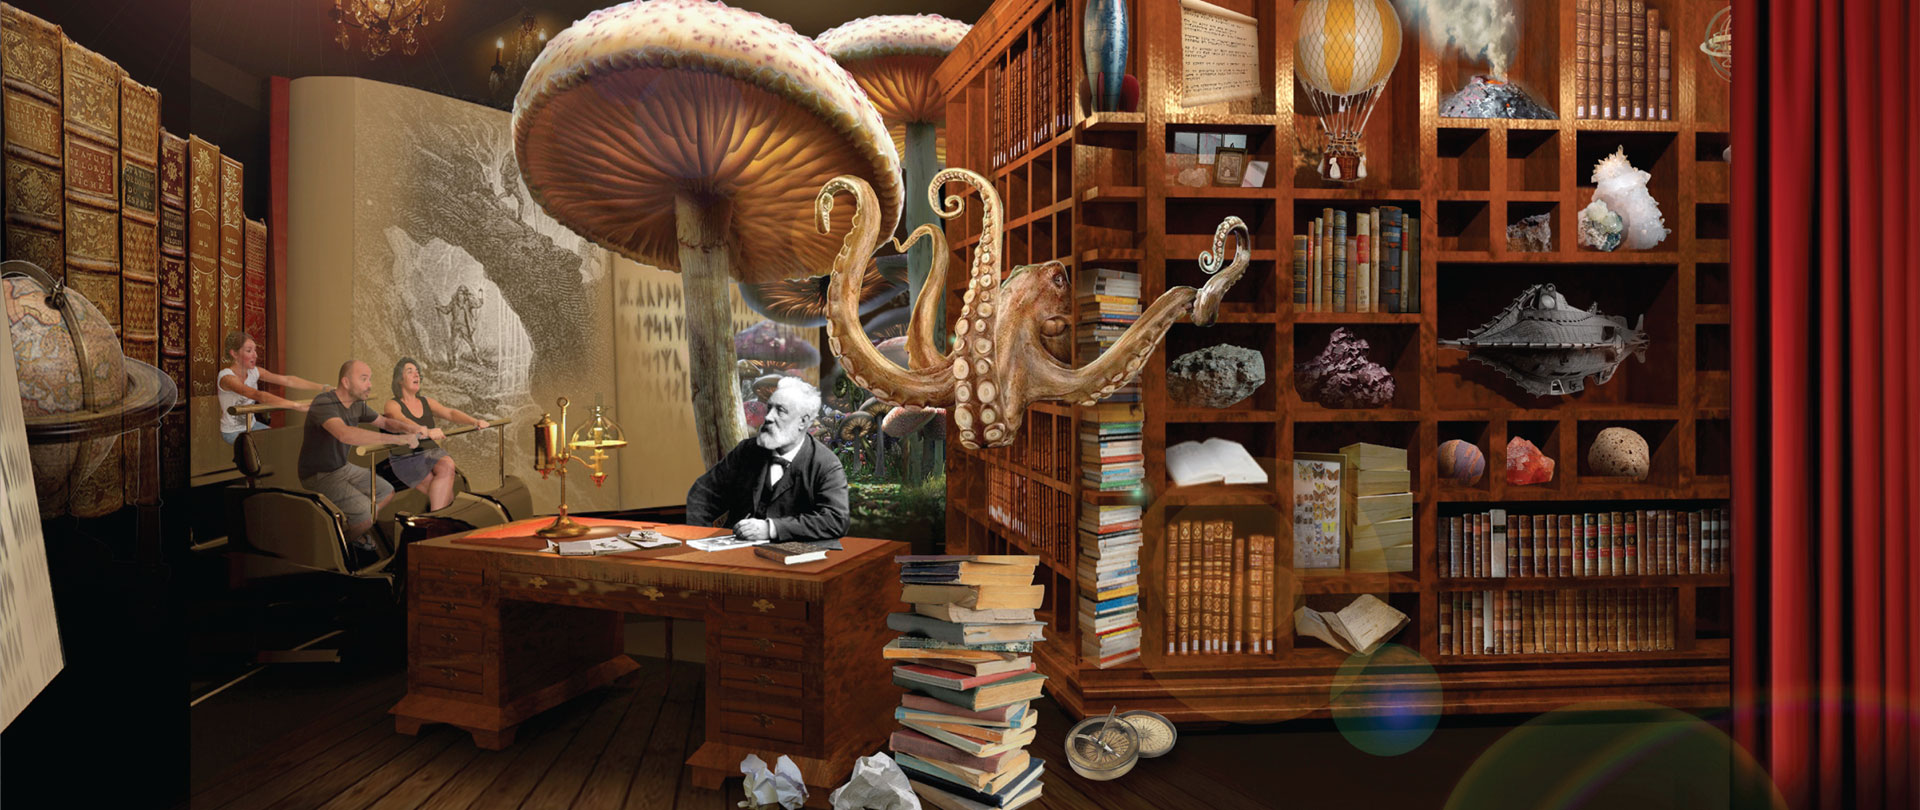 Le véhicule pénètre dans le bureau de Jules Verne où apparaissent des champignons, des monstres...